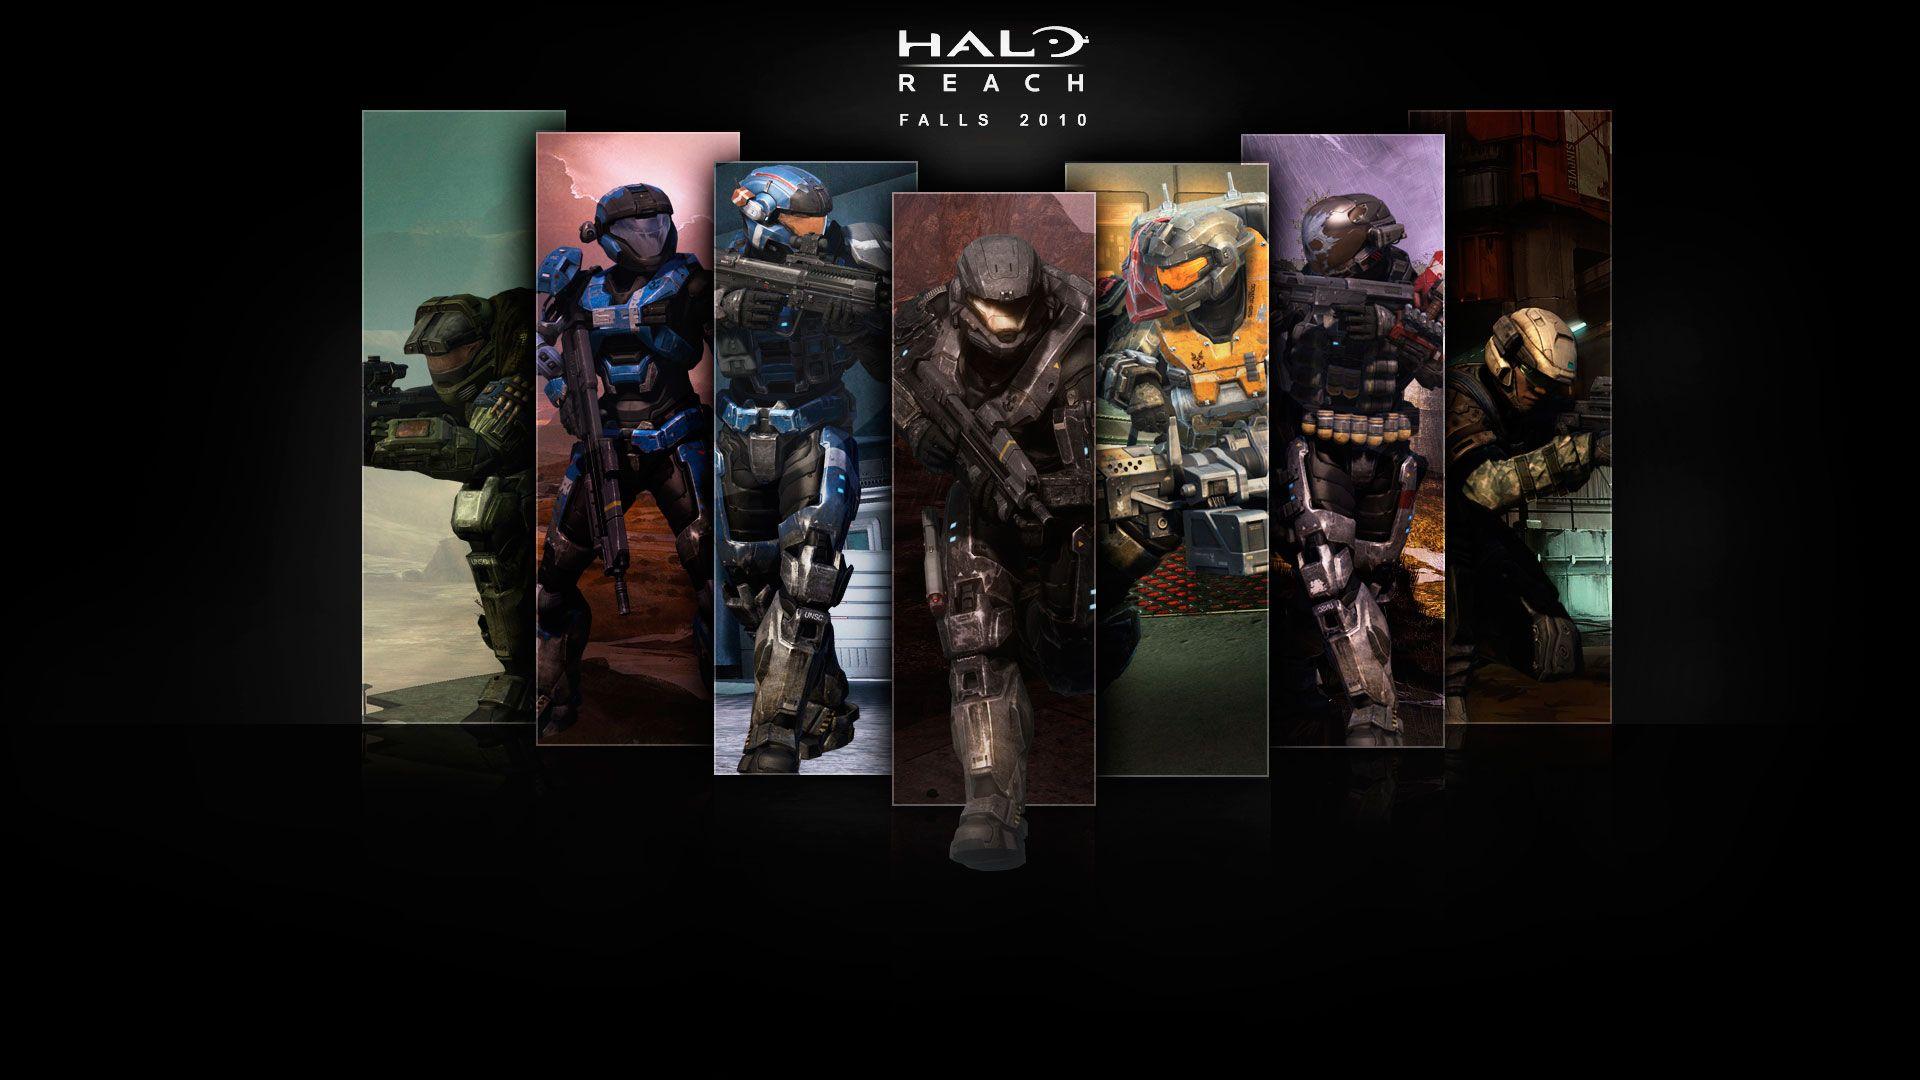 Halo Reach Wallpaper in HD